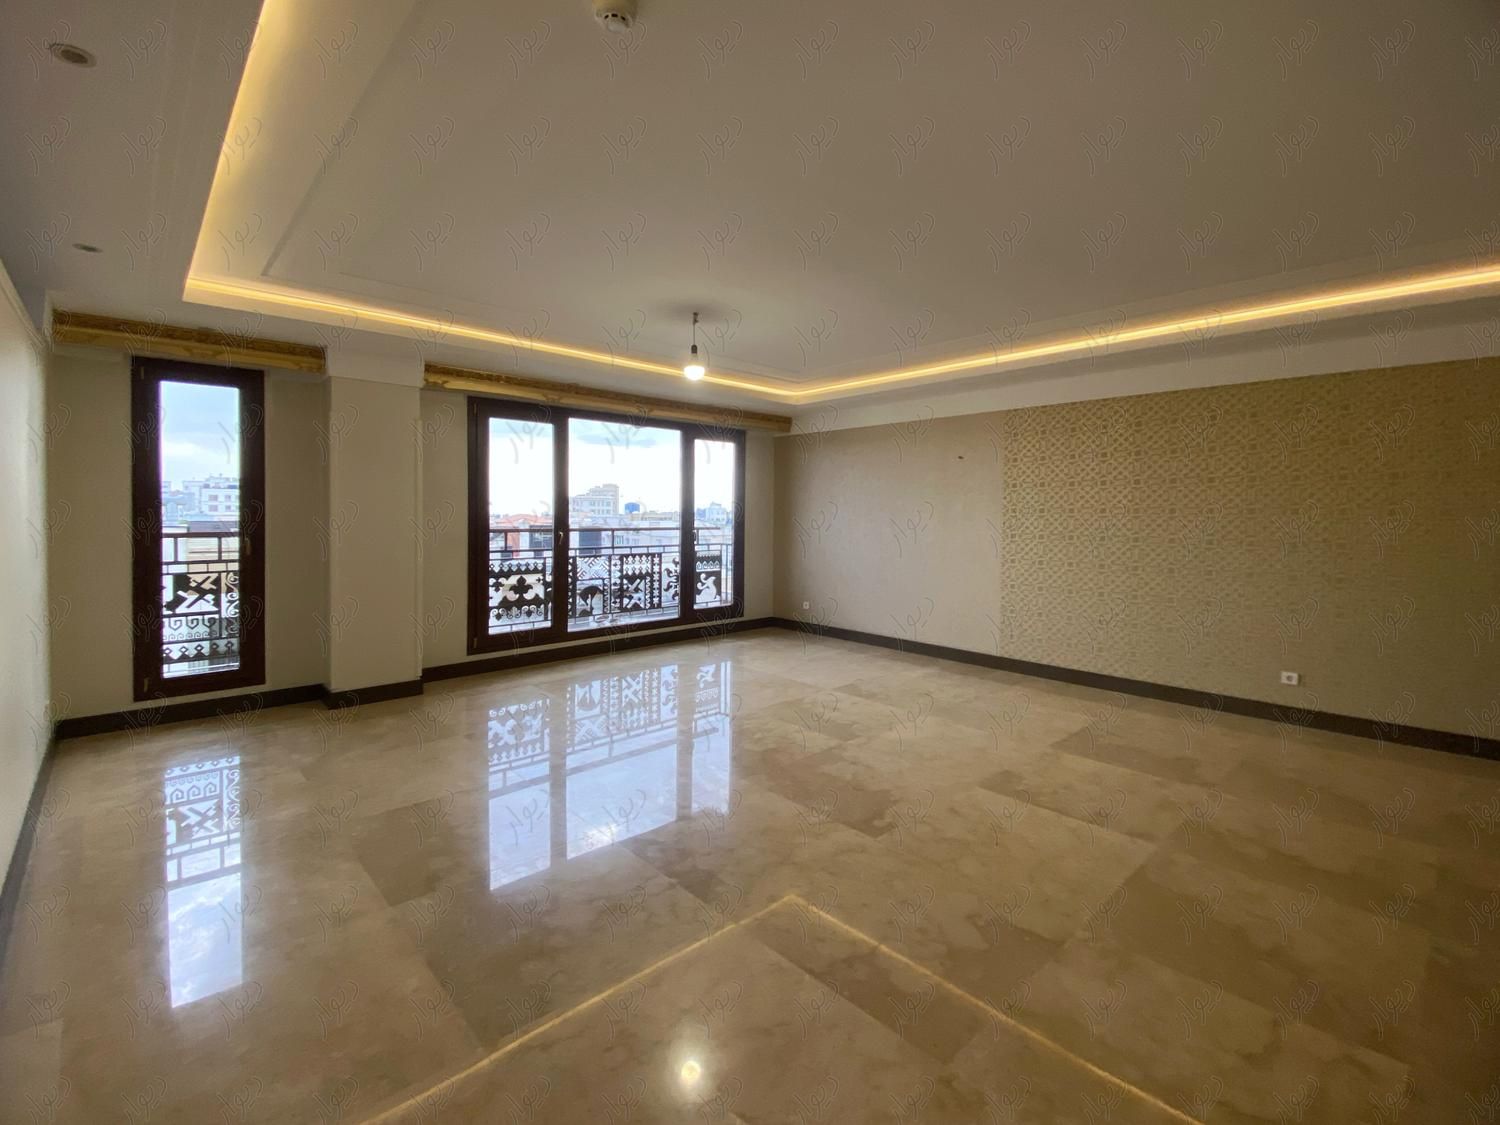 عمارت بکر (منصور) 230متر 3پارکینگ طبقه6 هتلینگ|فروش آپارتمان|تهران, دروس|دیوار